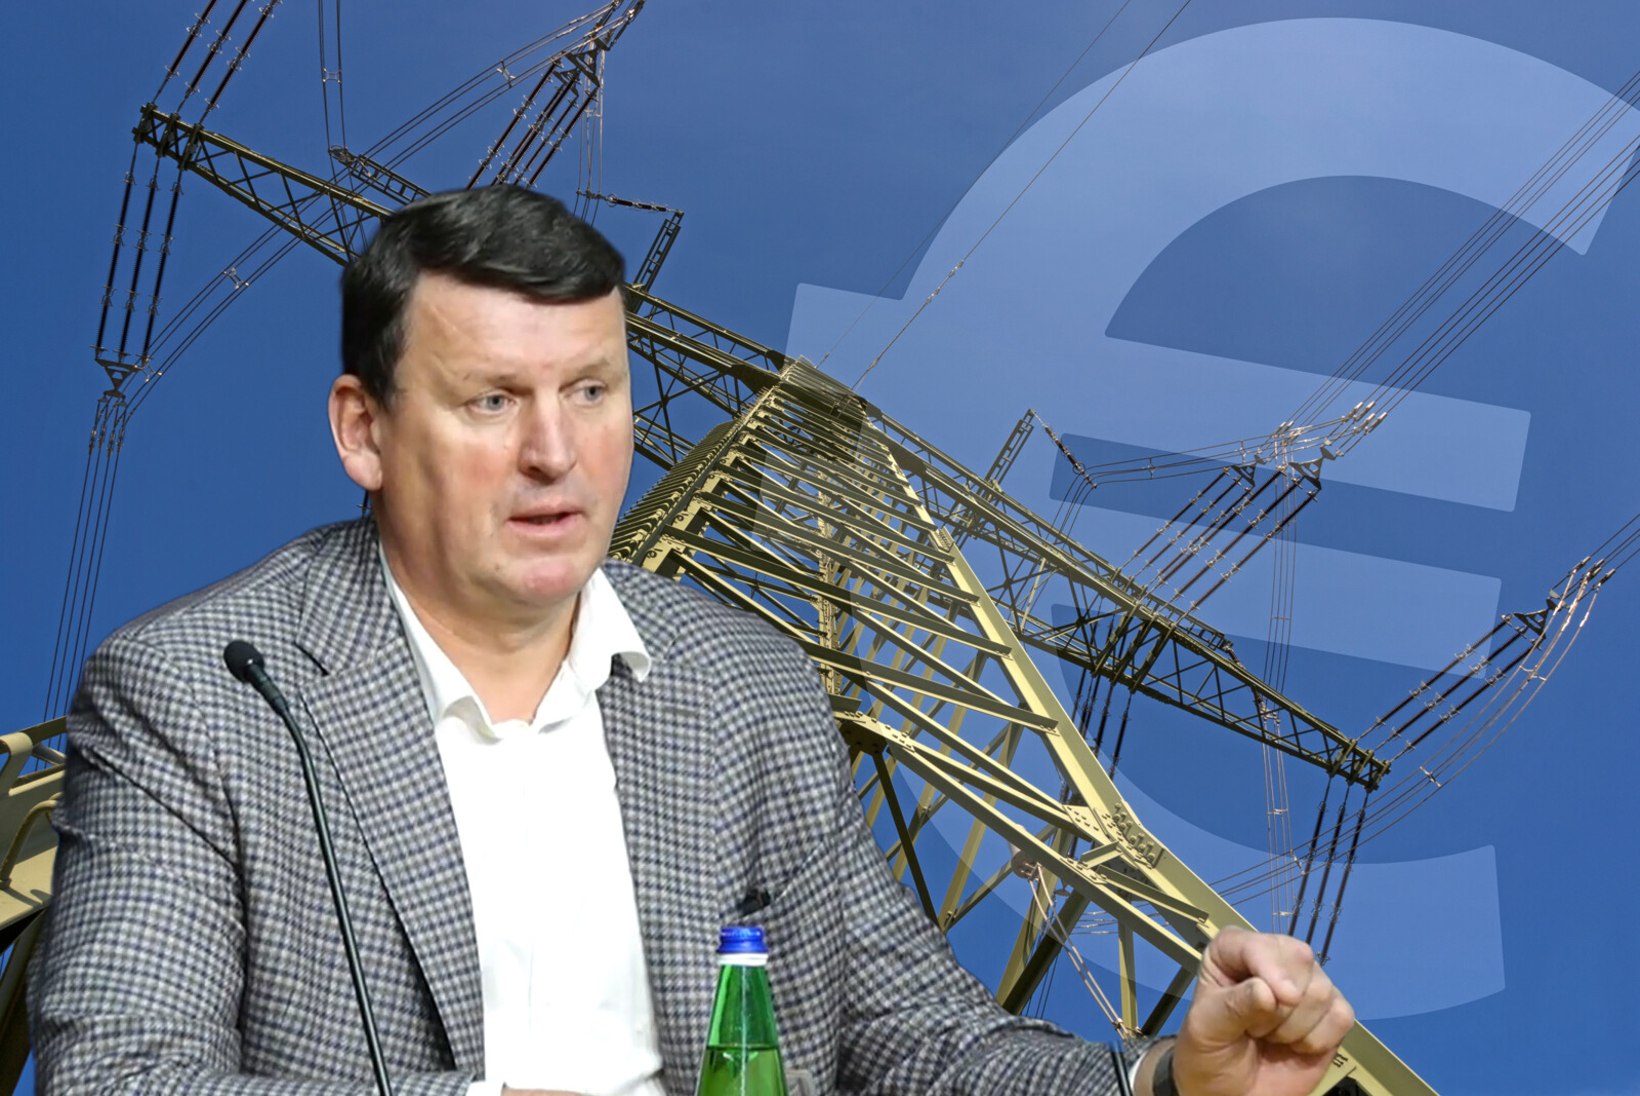 ÕL VIDEO | Eesti Energia klient hakkab universaalteenuse eest maksma 19,24 senti kilovatt-tunni eest. Enefit Poweri juht Andres Vainola: tootjahind ei kata isegi meie kulusid!